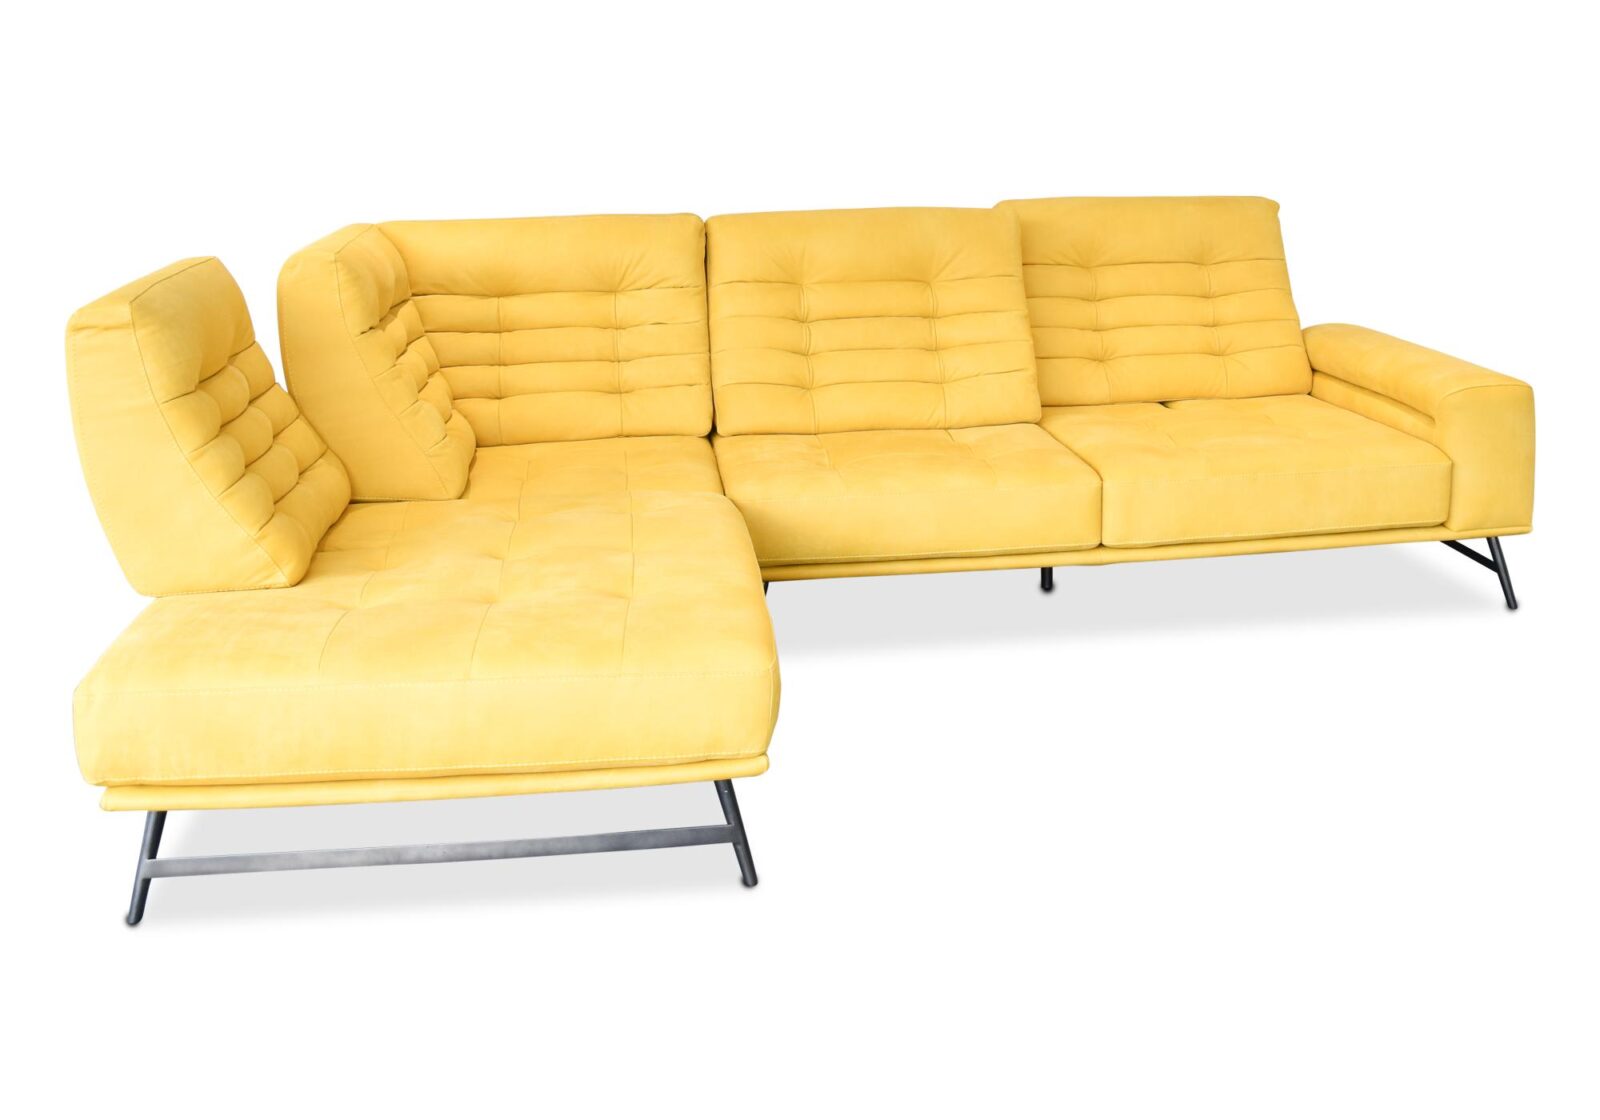 Ecksofa Roché mit Sitztiefenverstellung. Bezug: Leder. Farbe: Gelb. Erhältlich bei Möbel Gallati.